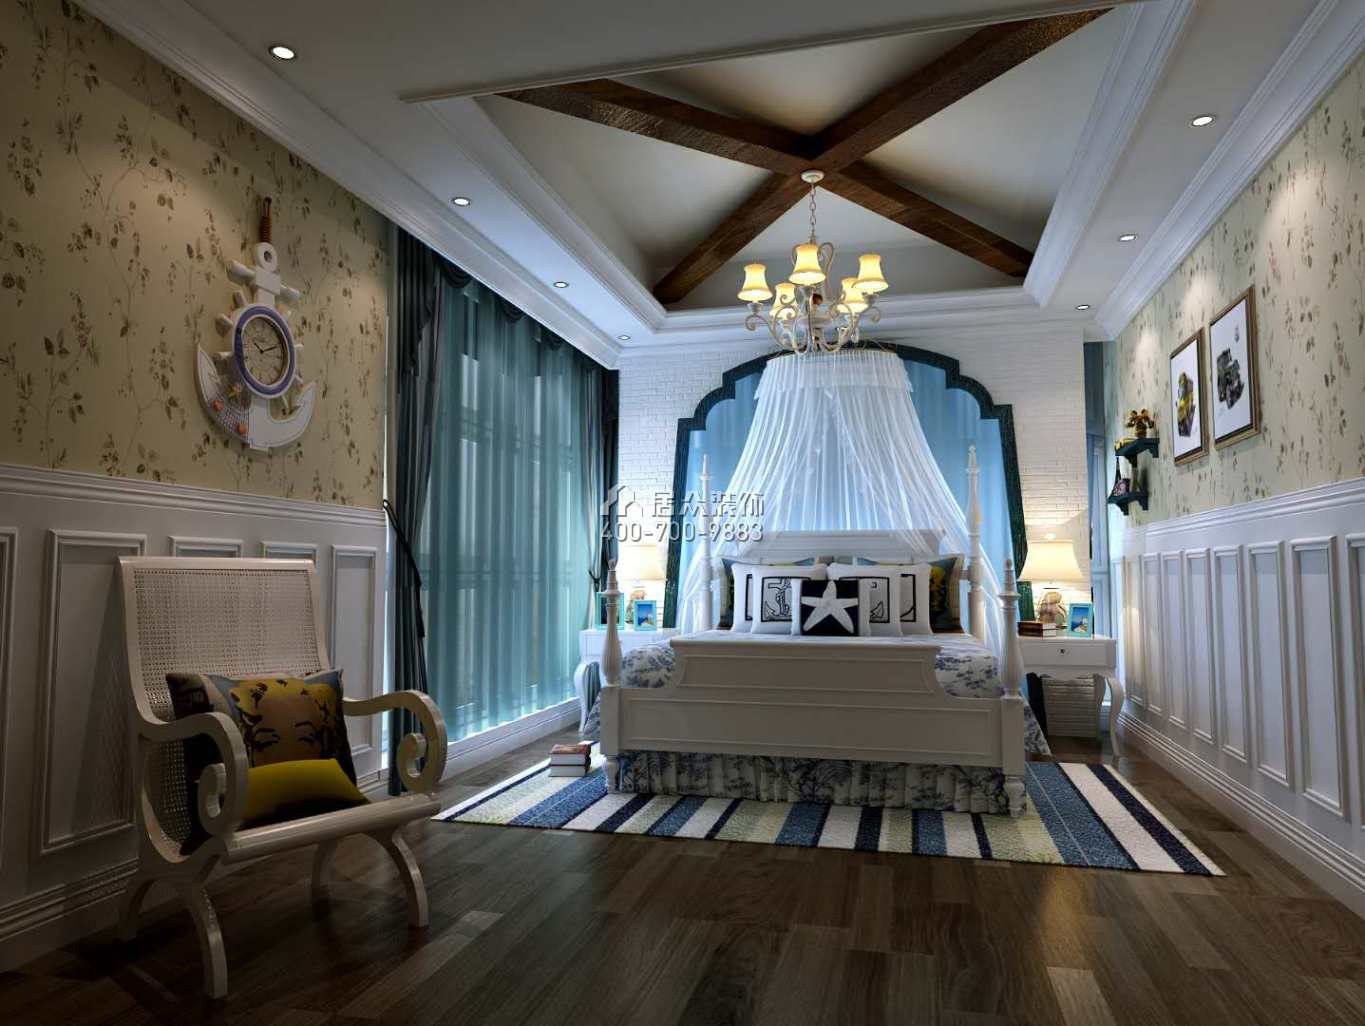 龙吟水榭400平方米美式风格别墅户型卧室装修效果图